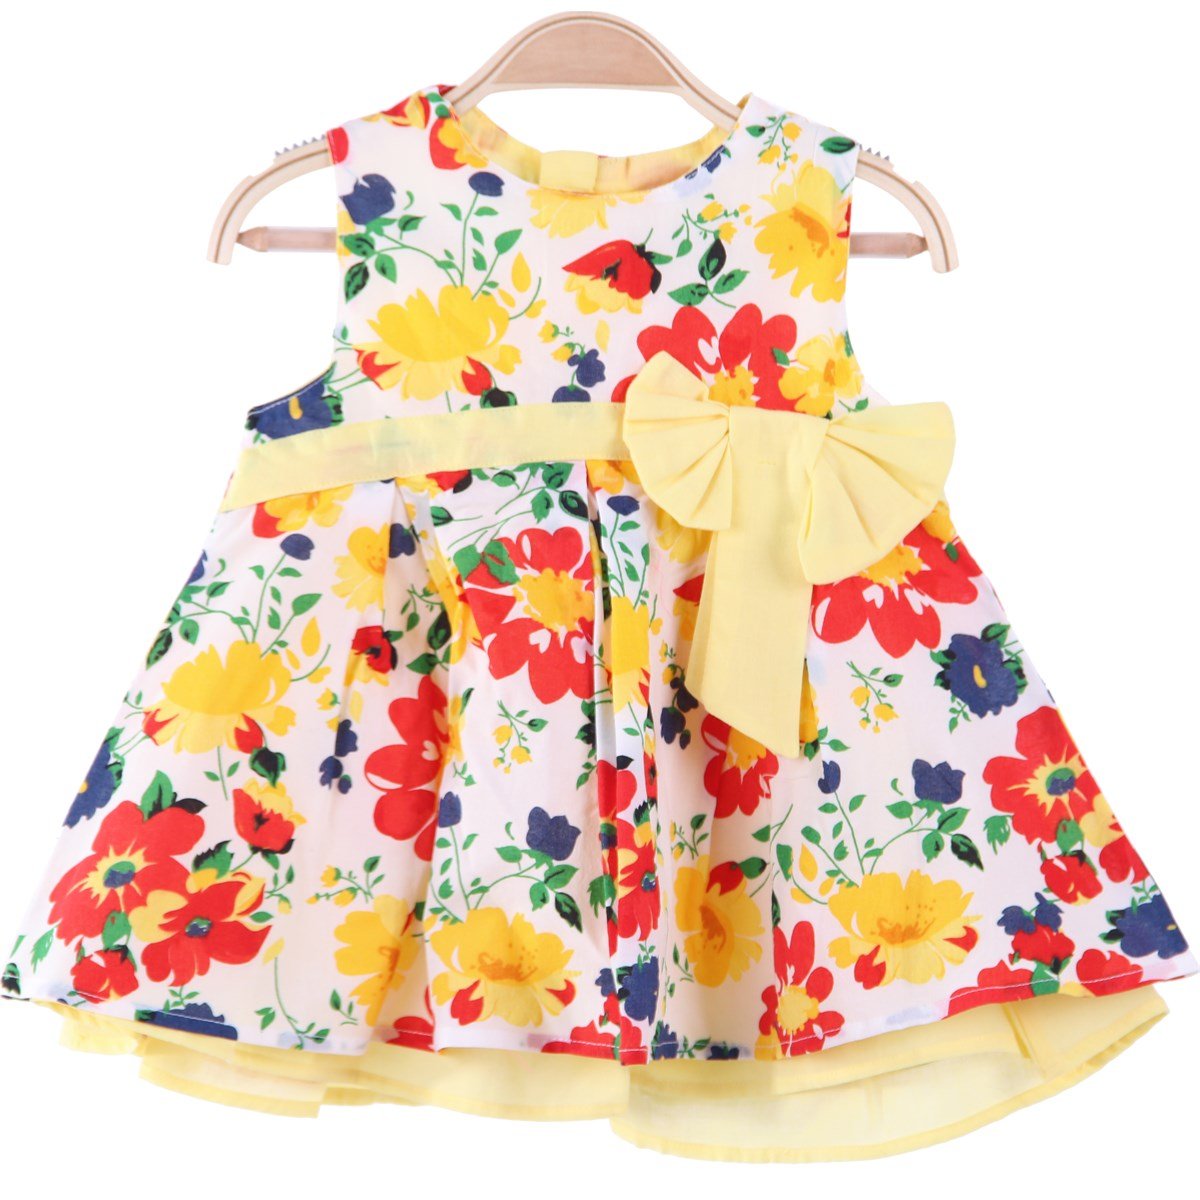 Renkli Çiçek Desenli Bebek Elbisesi 4 Ay-3 Yaş | Breeze